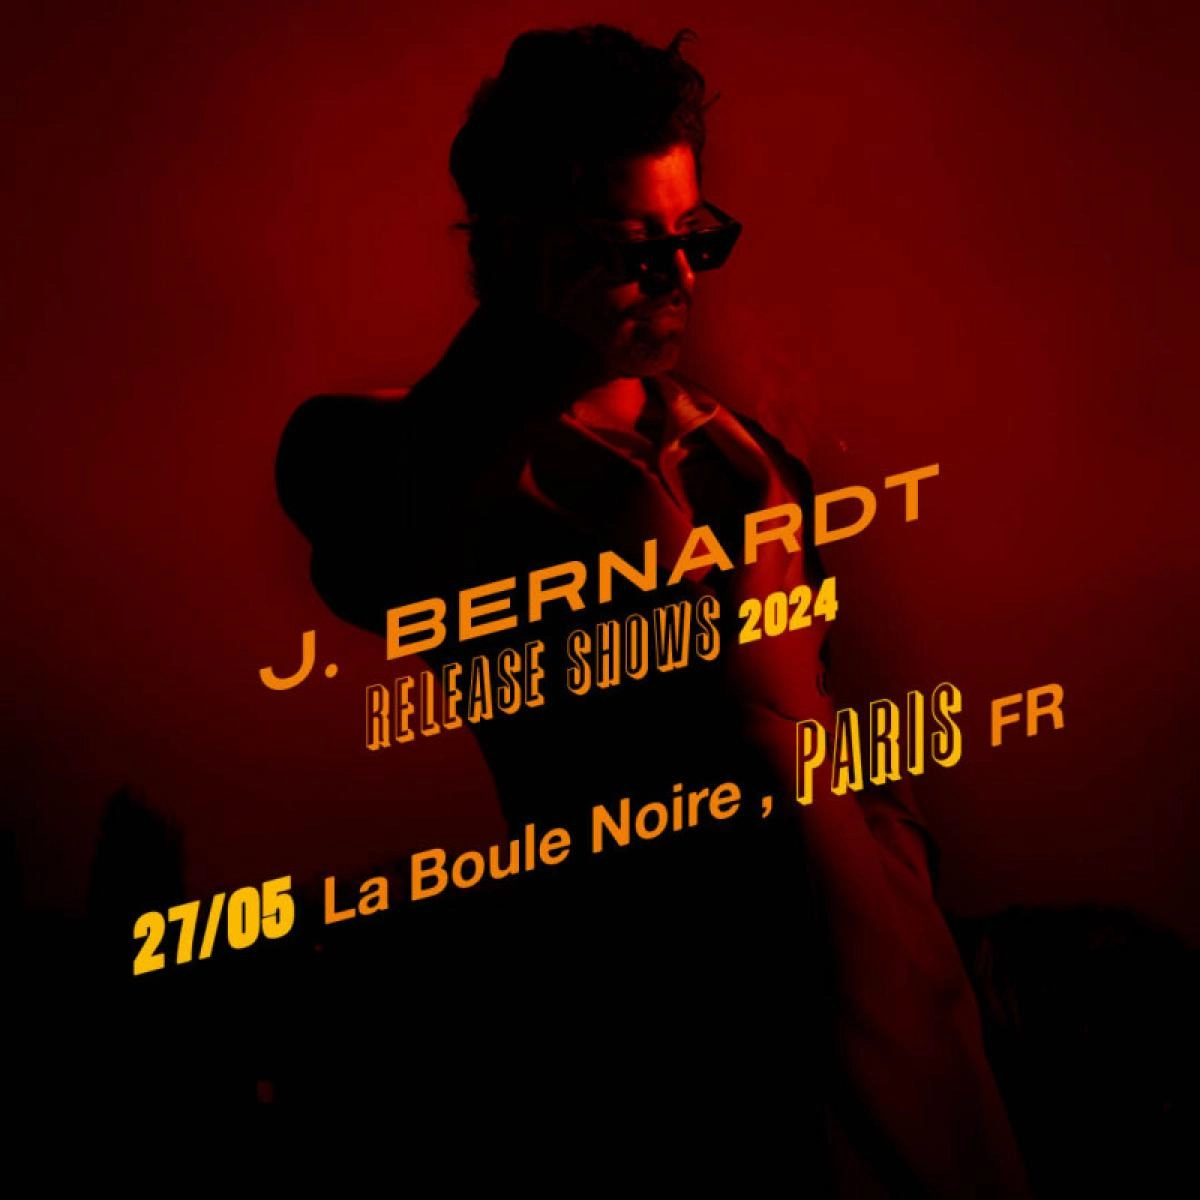 J. Bernardt en La Boule Noire Tickets